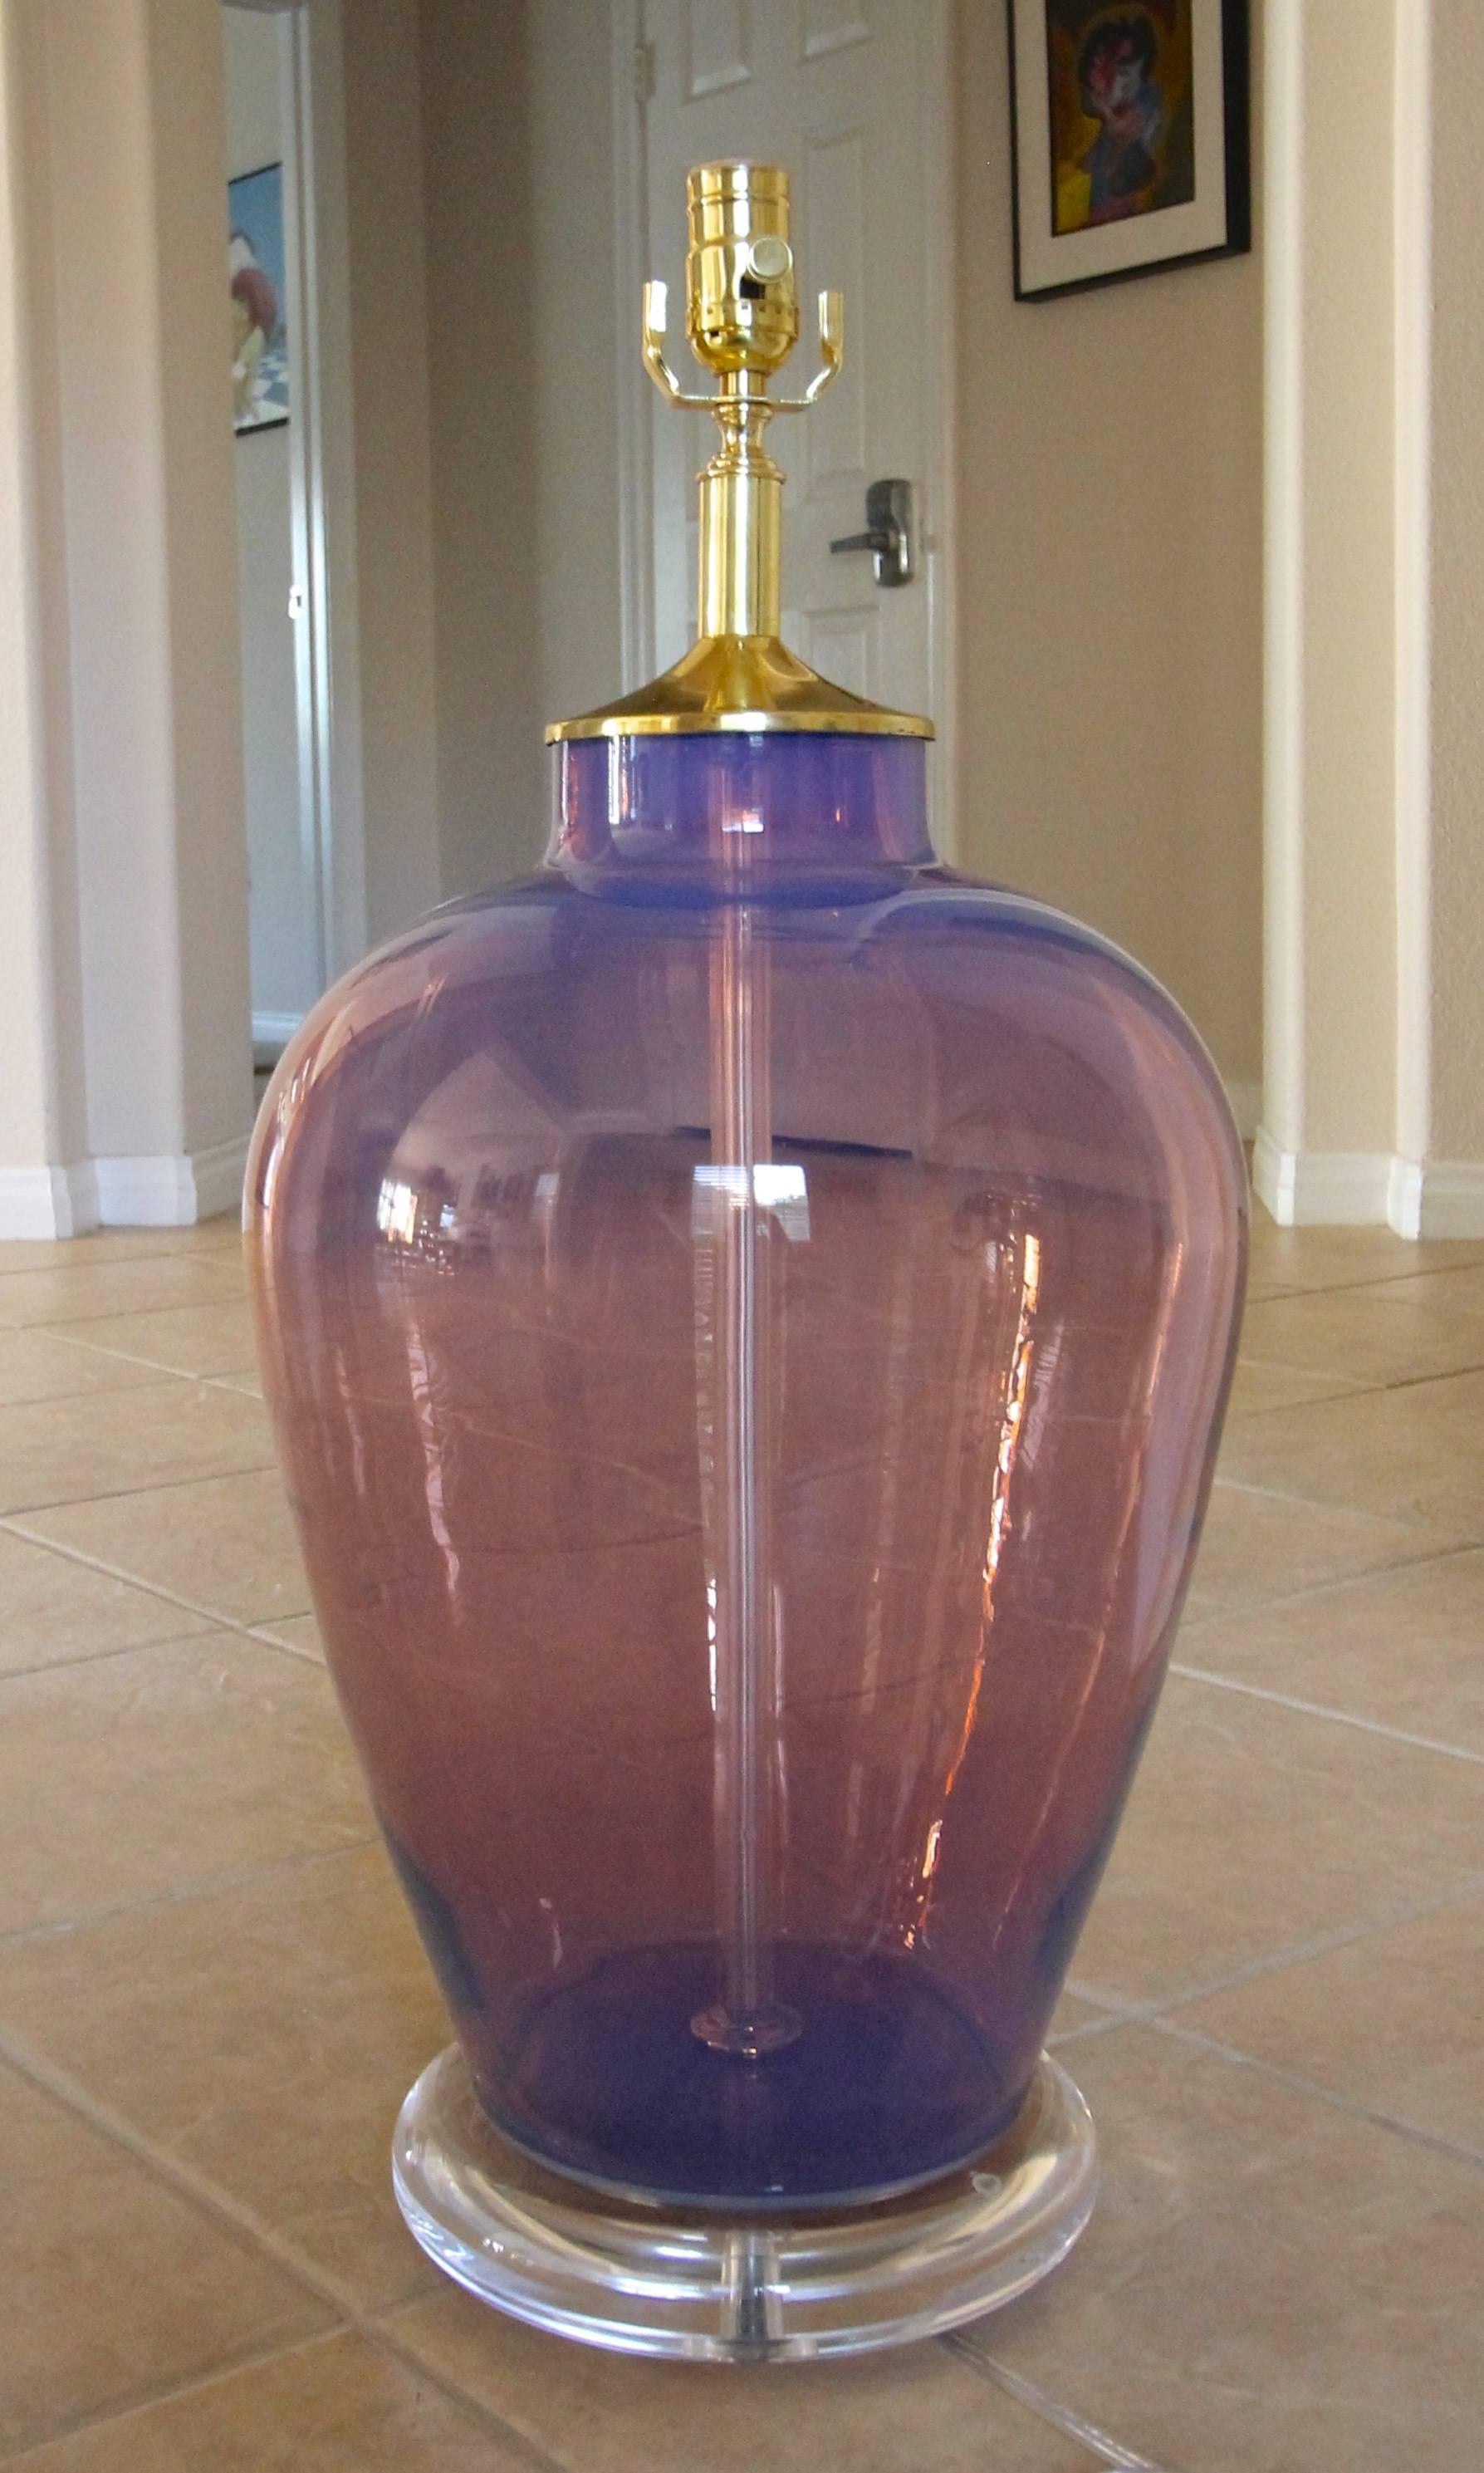 Lampe de table en verre opalescent de Murano, de forme bulbeuse, avec des accessoires en laiton et sur une base en acrylique personnalisée. Le verre opalescent présente de douces nuances de violet et de lavande. Câblage refait à neuf avec prise et